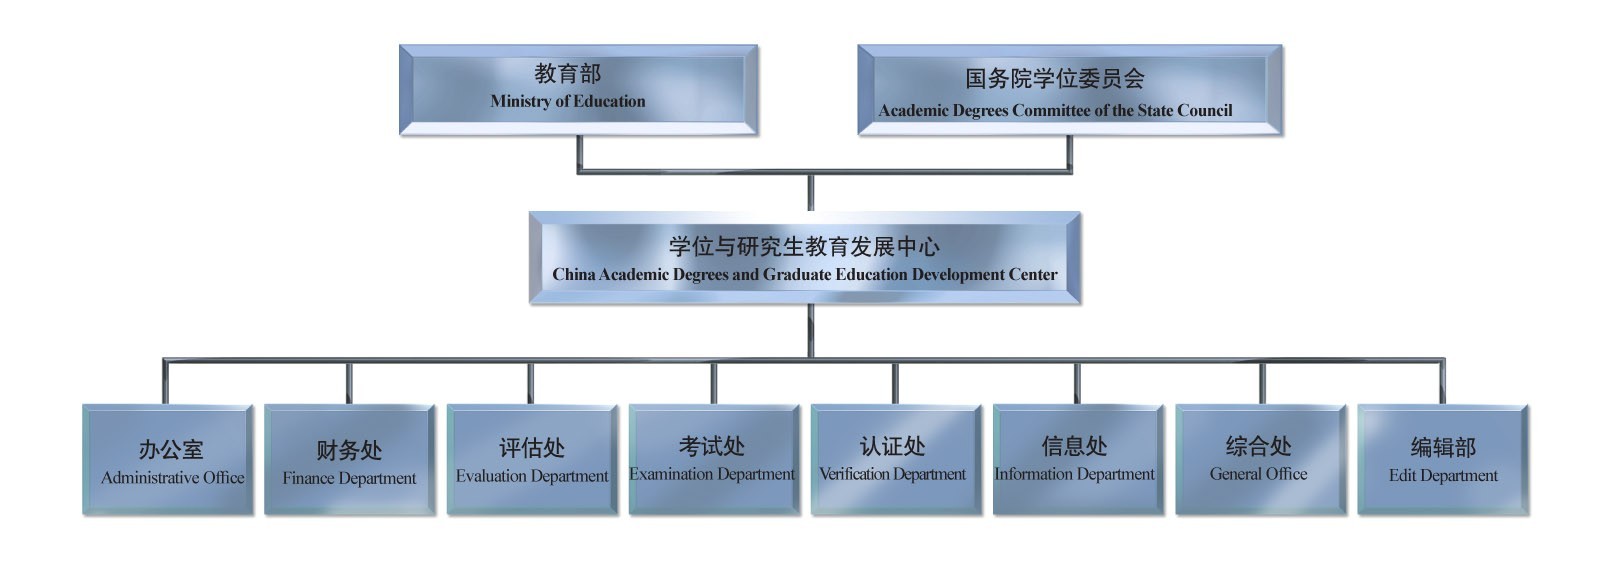 教育部學位與研究生教育發展中心(中華人民共和國教育部學位與研究生教育發展中心)